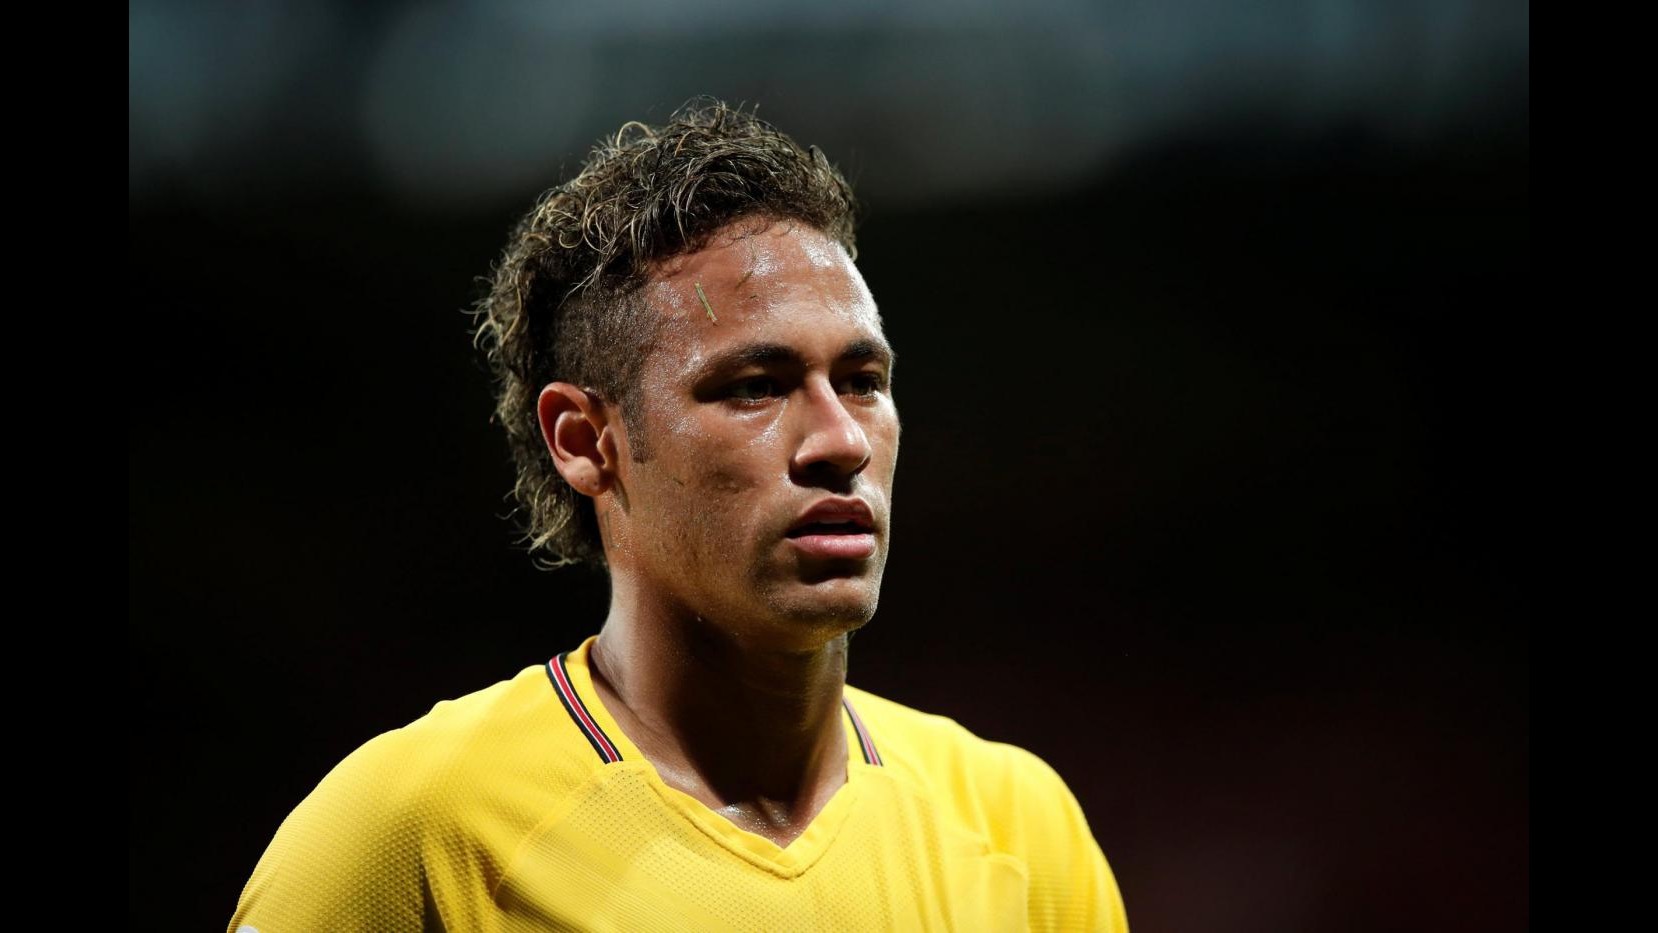 FOTO Ligue 1: debutto da manuale per Neymar con la maglia del Psg